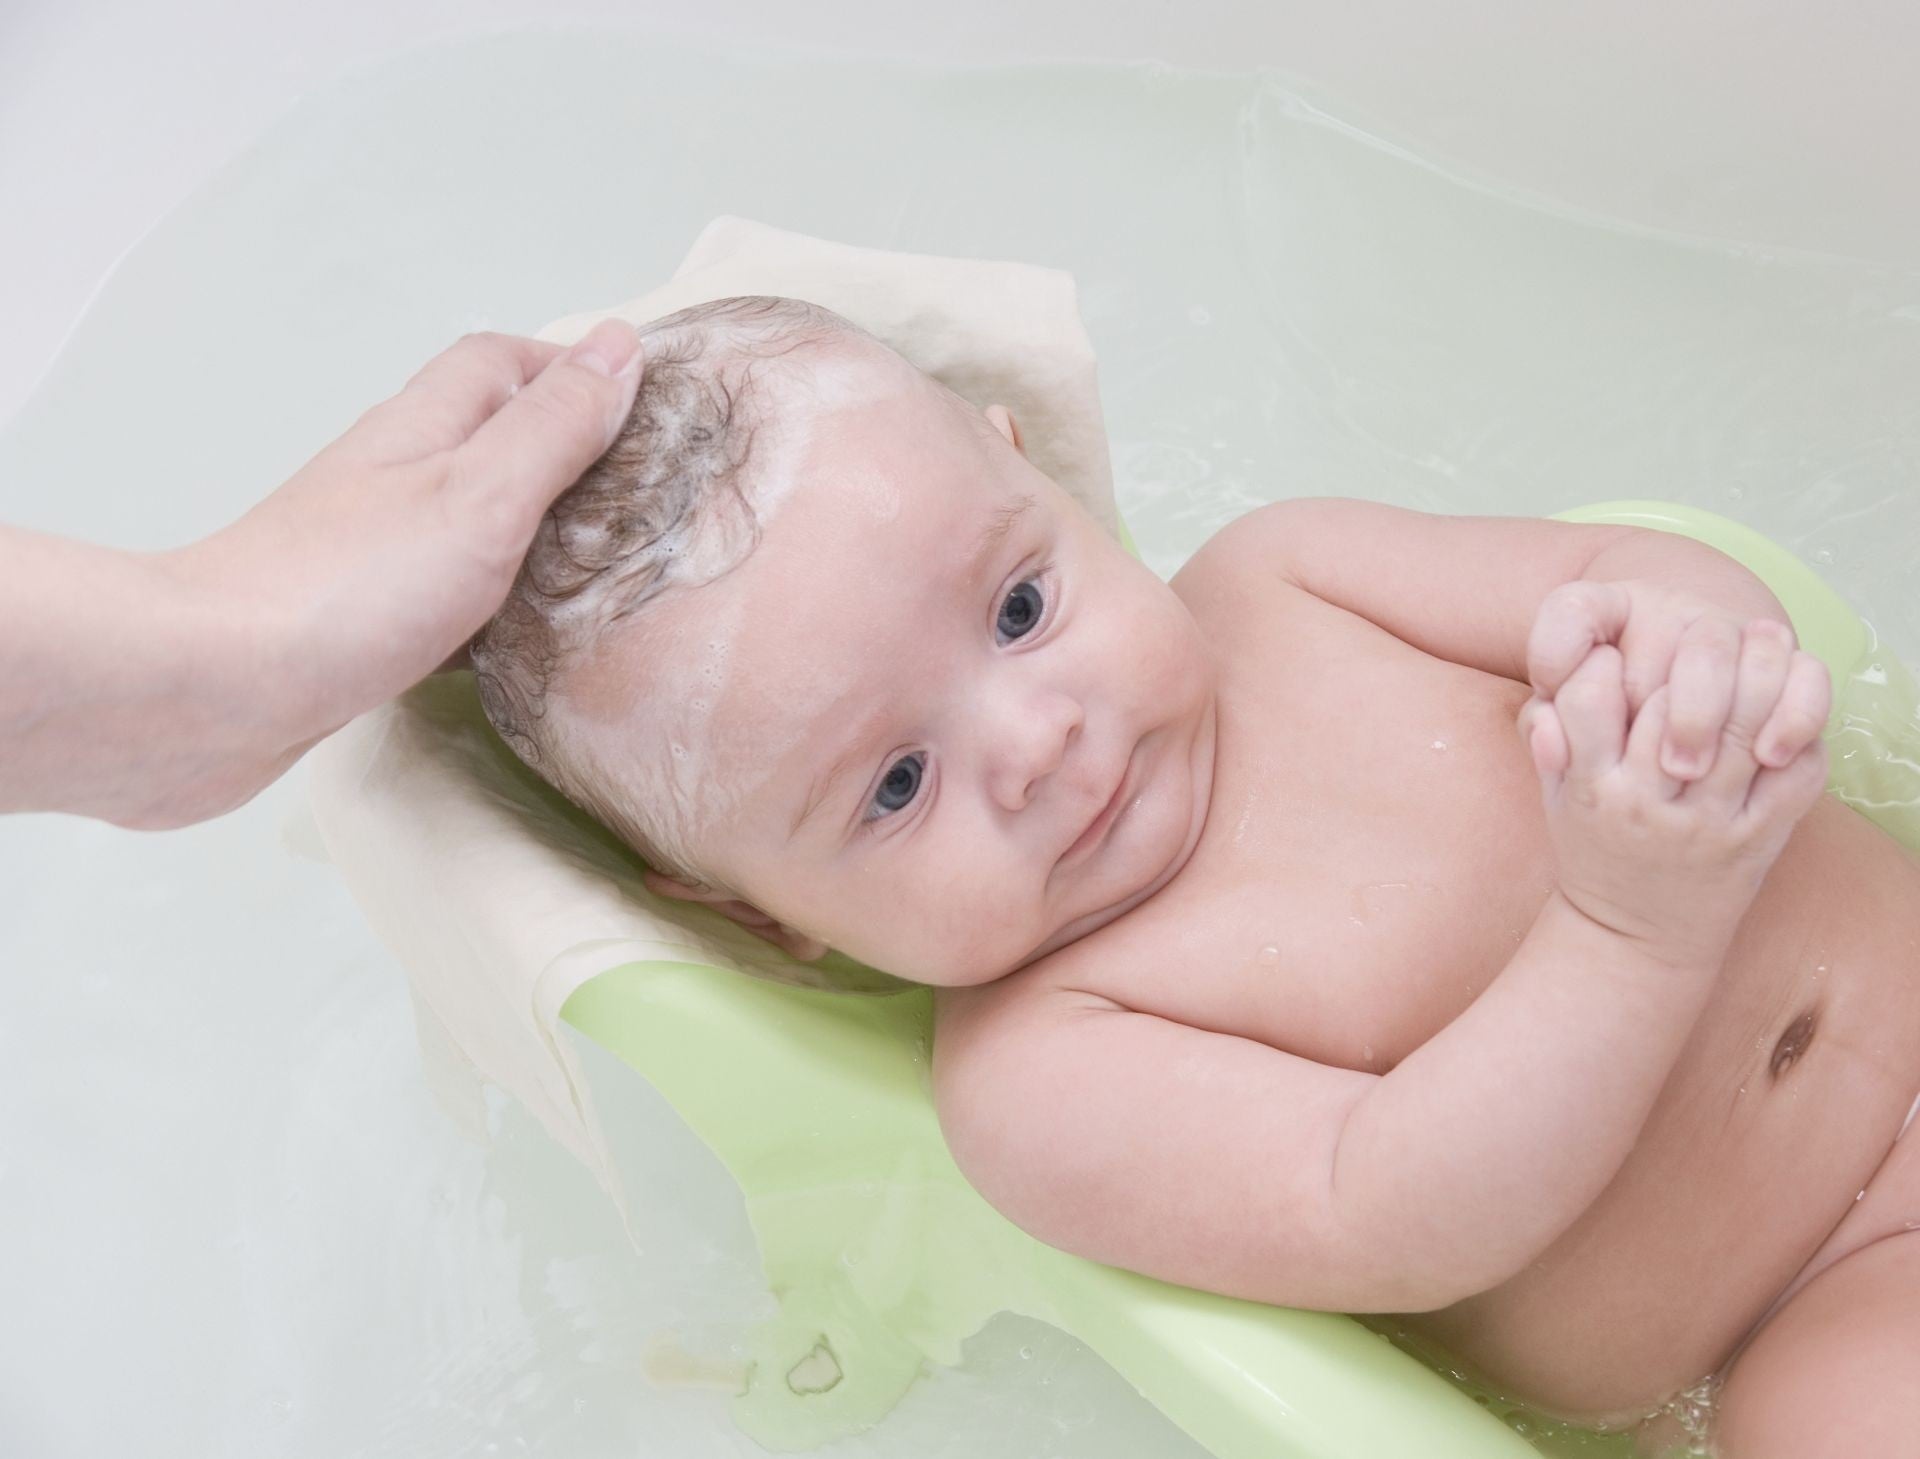 Come e quando lavare i capelli a neonati e bambini?